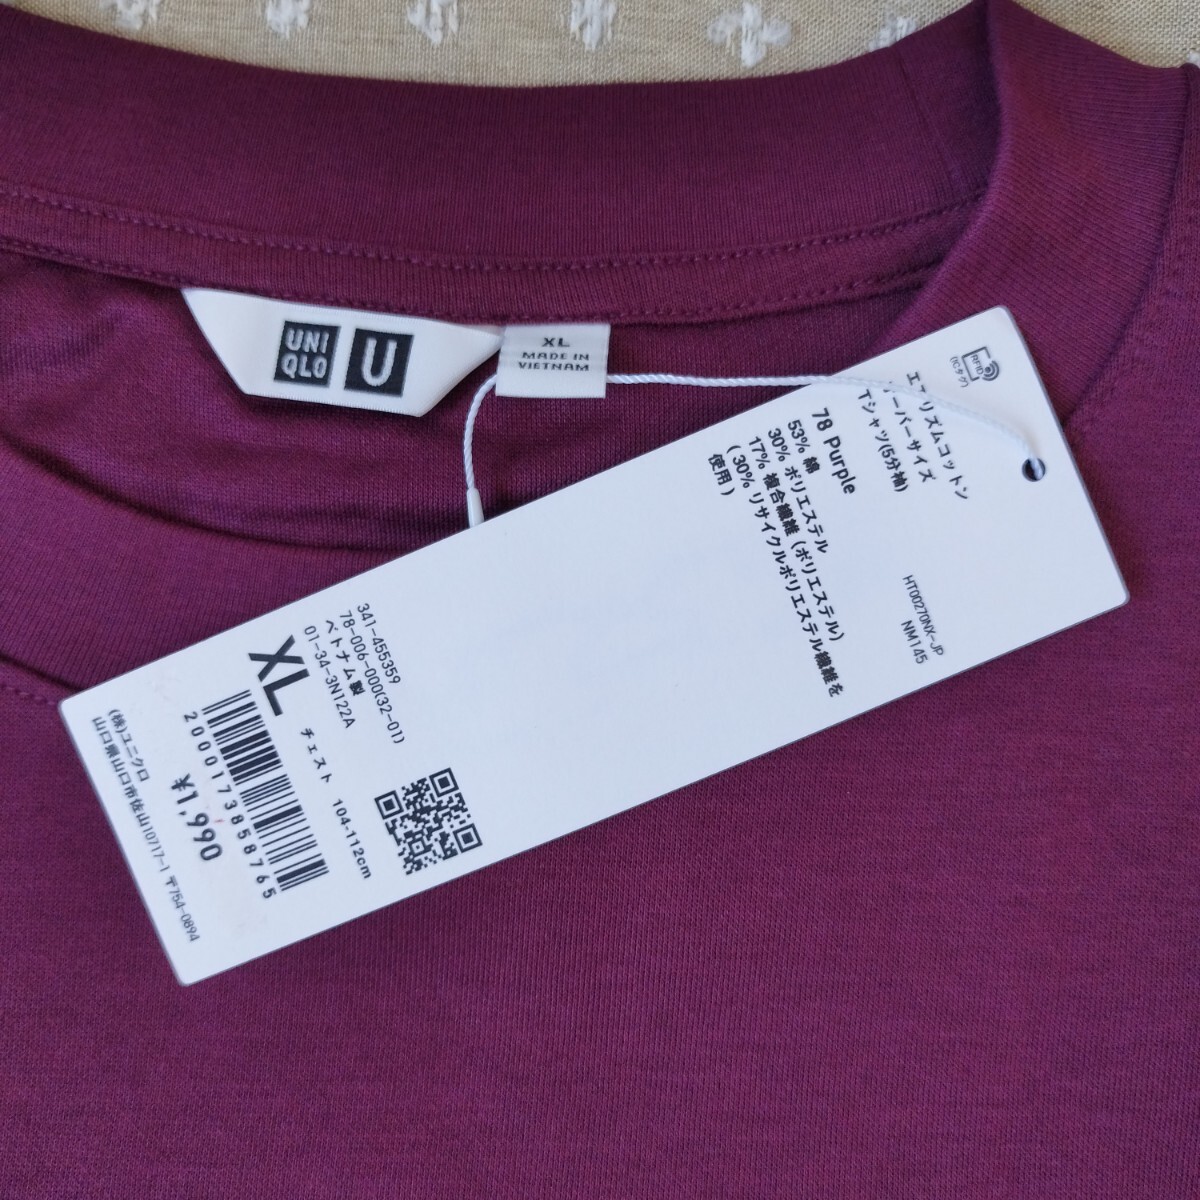 未使用 タグ付 ユニクロ UNIQLO エアリズム コットン オーバーサイズ Tシャツ 5分袖 xl メンズ purple●ネコポス 送料無料